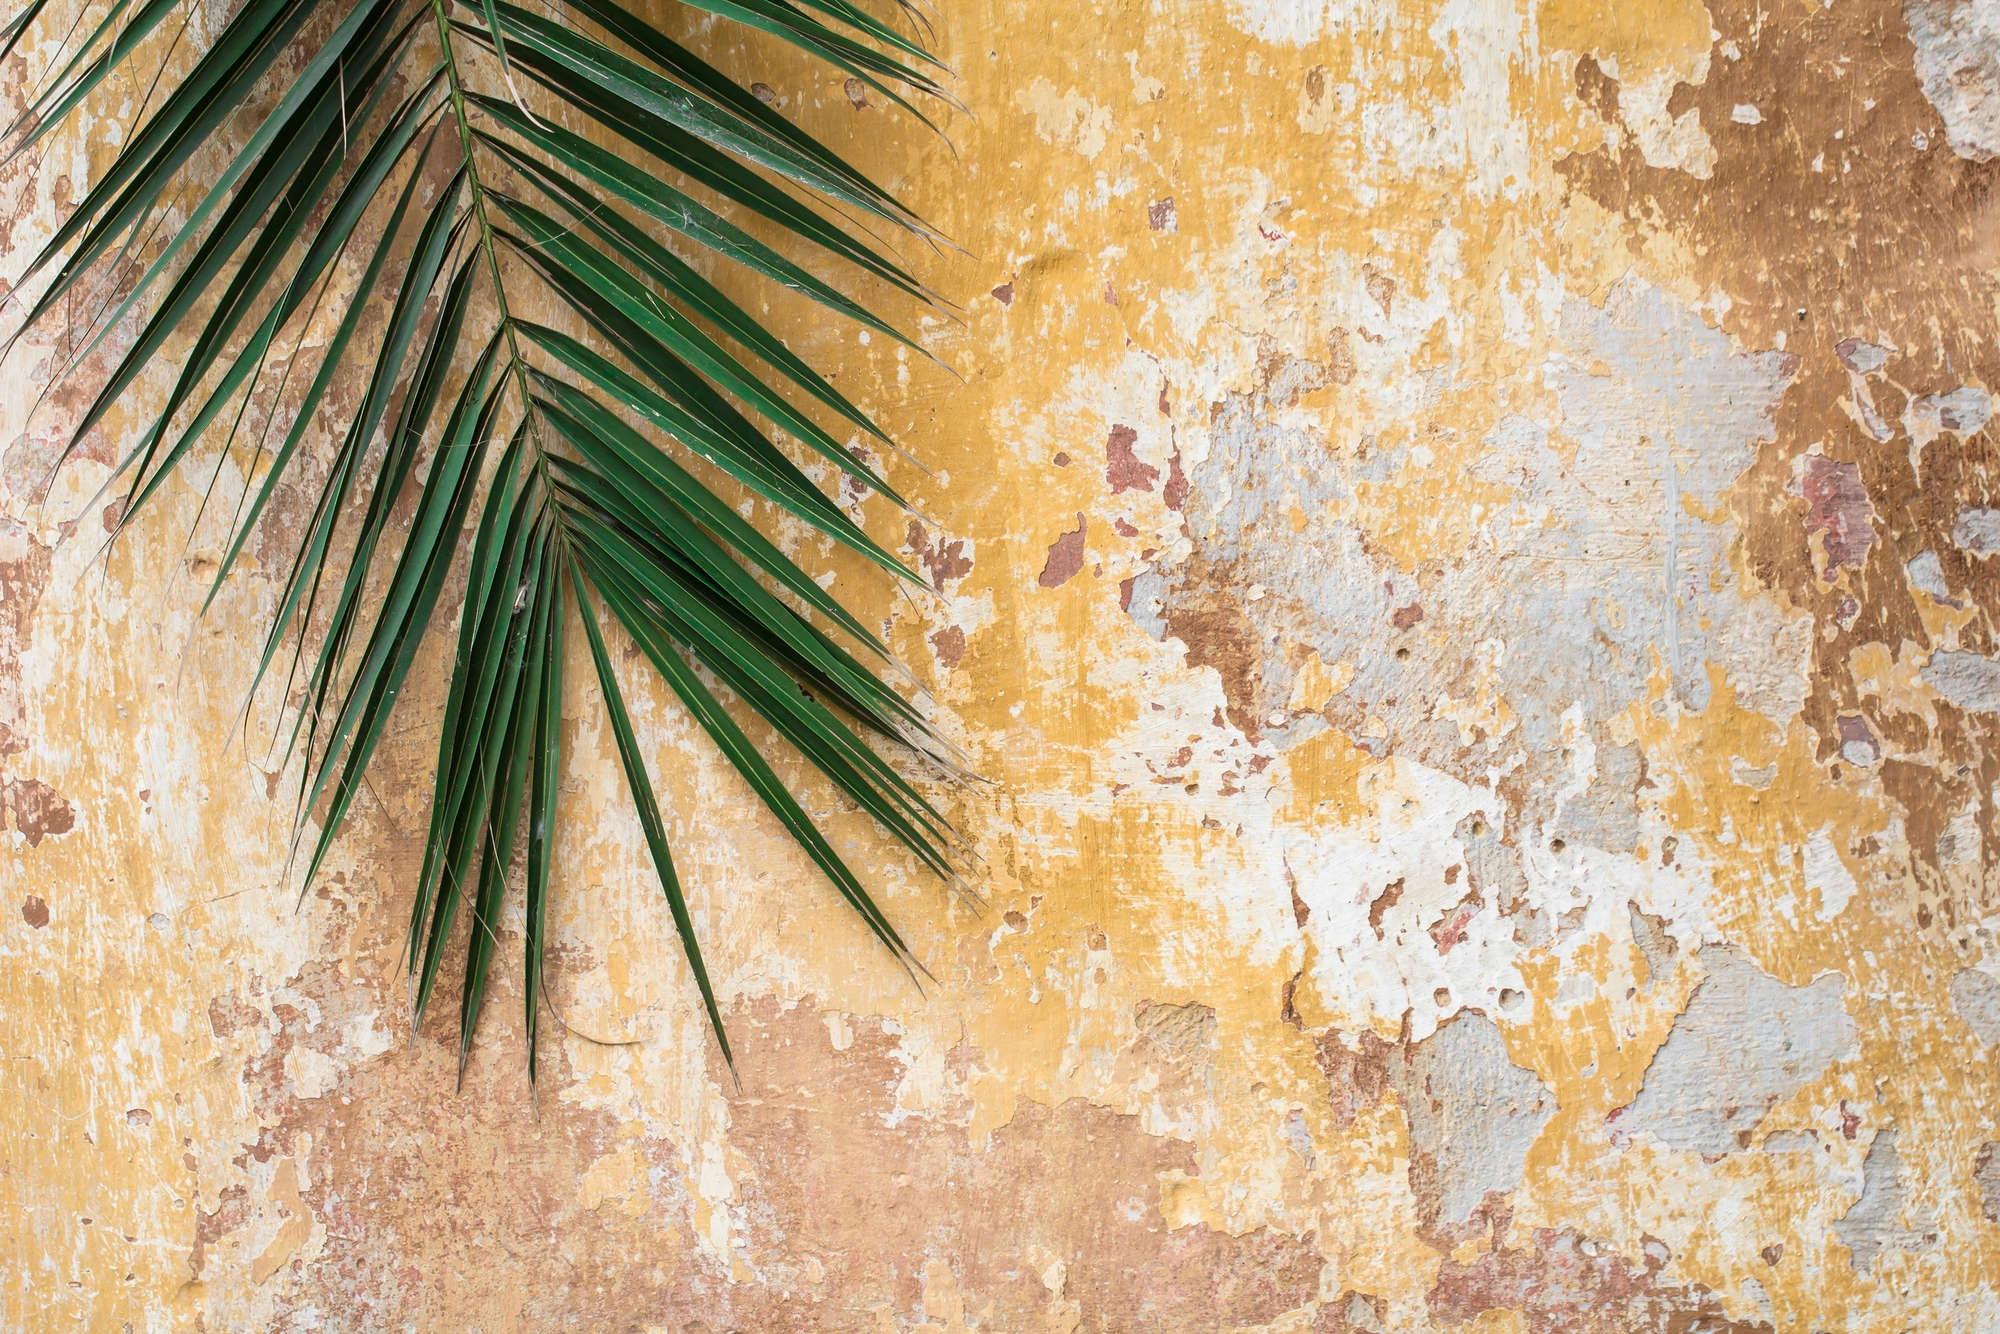             Natura murale di foglie di palma davanti a un muro di pietra su vello liscio madreperlato
        